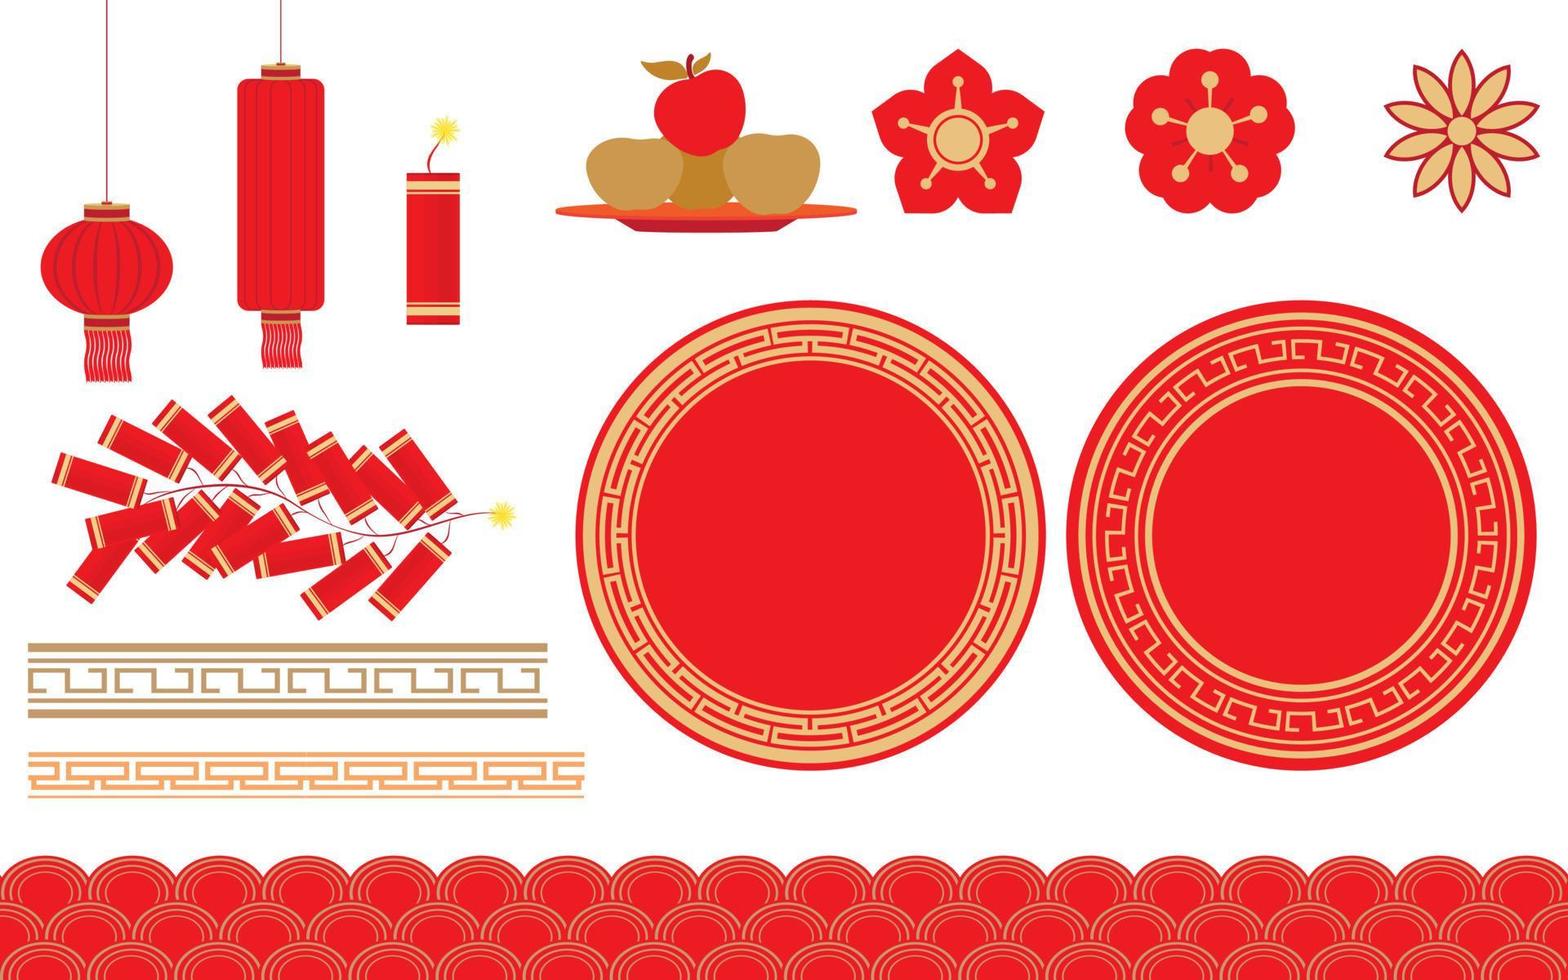 dekorationerna används för design av online-banners för kinesiska nyårsfestivaler vektor